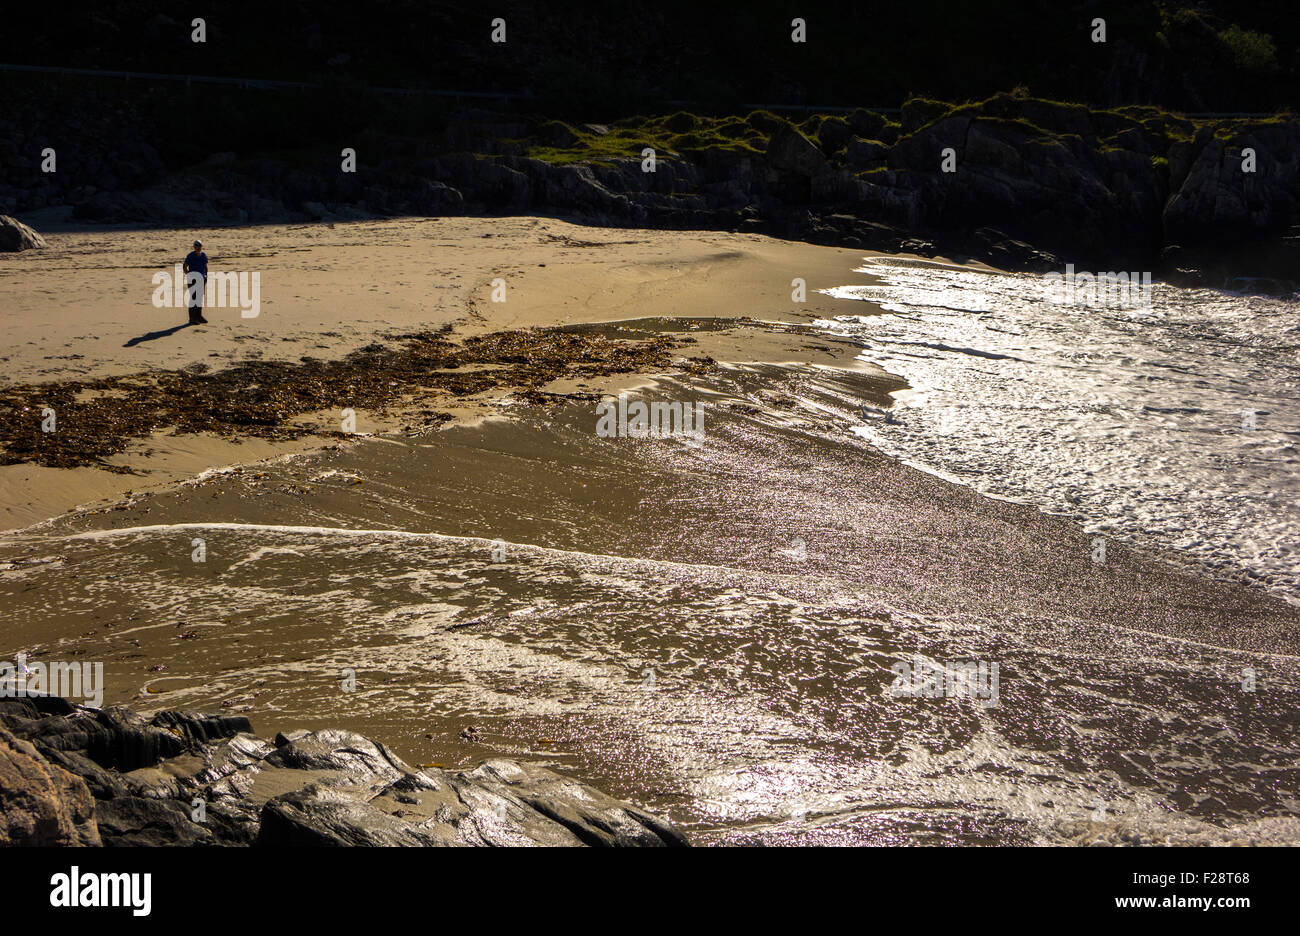 Petite figure solitaire sur grosse vague plage lavés, Andoya, Norvège Banque D'Images